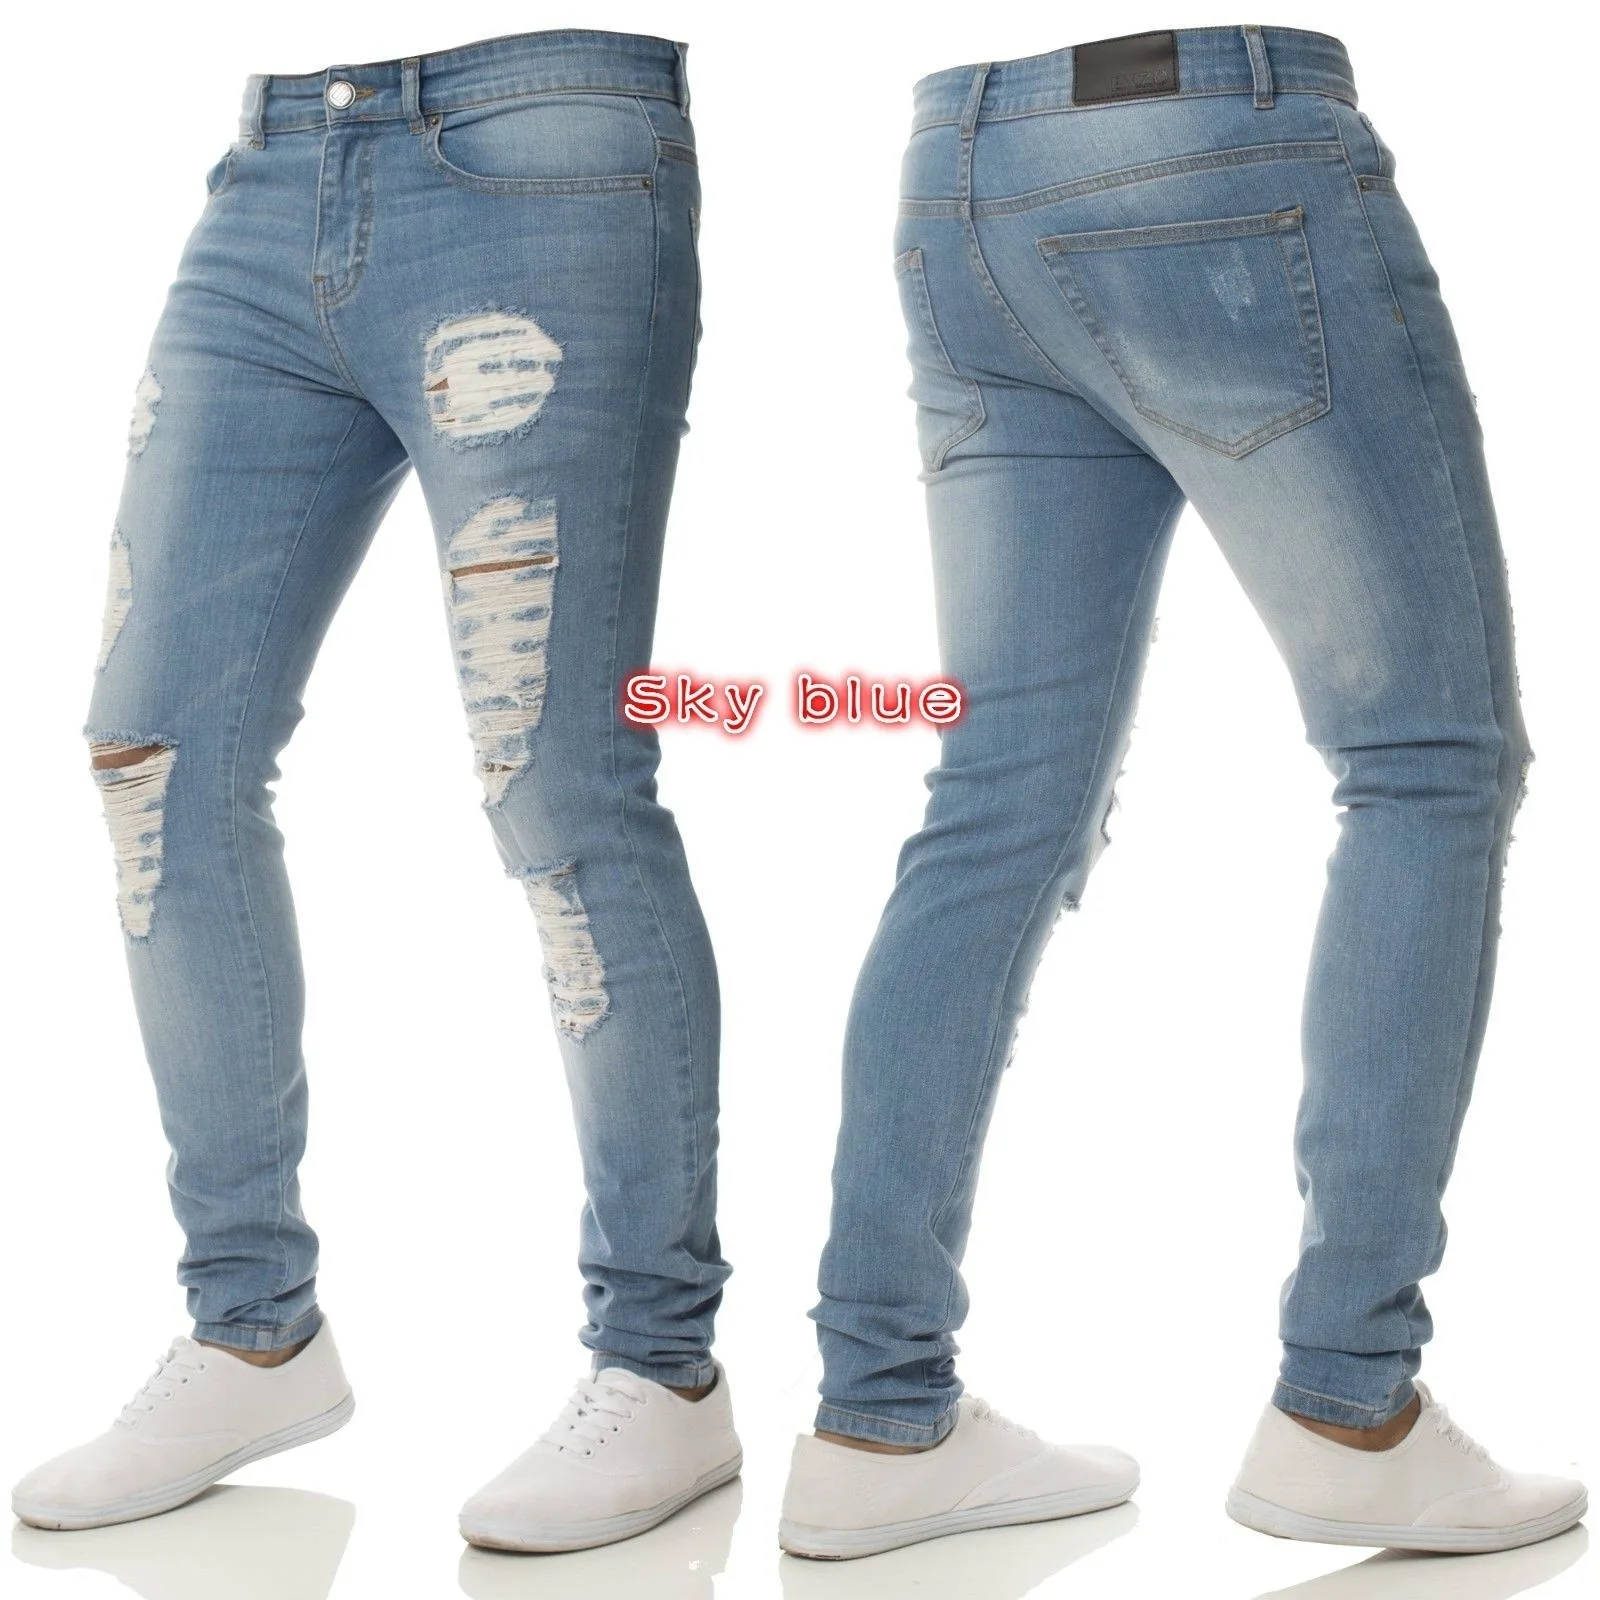 Однотонные рваные джинсы с дырками на коленях для мужчин,, фирменный дизайн, обтягивающие джинсы с эффектом потертости, джинсы в стиле хип-хоп